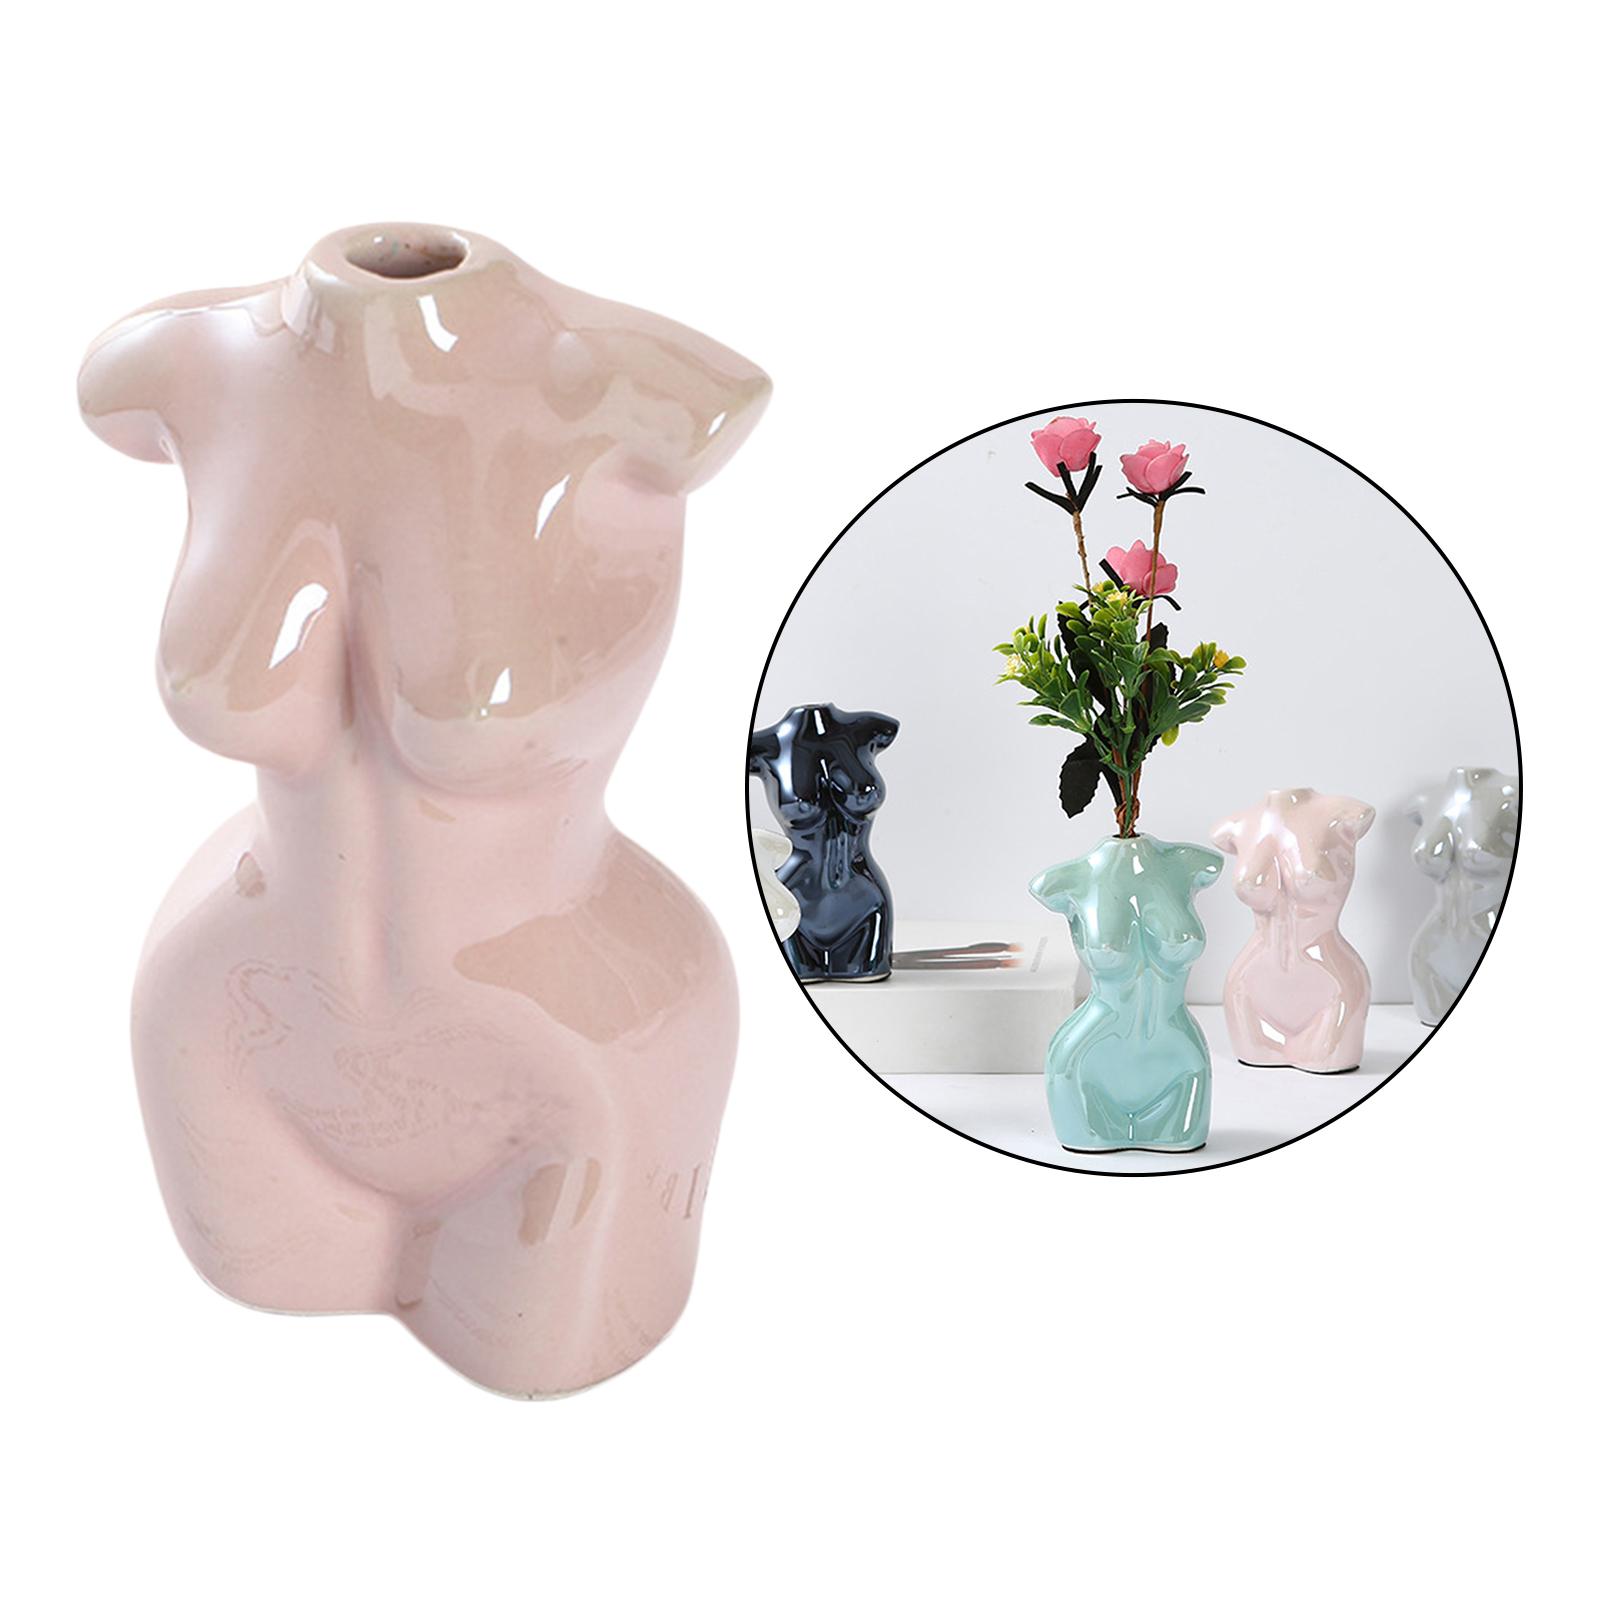 Female Body Vase Art Ceramic Home Tabletop Decor Flower Pot Vase Pink